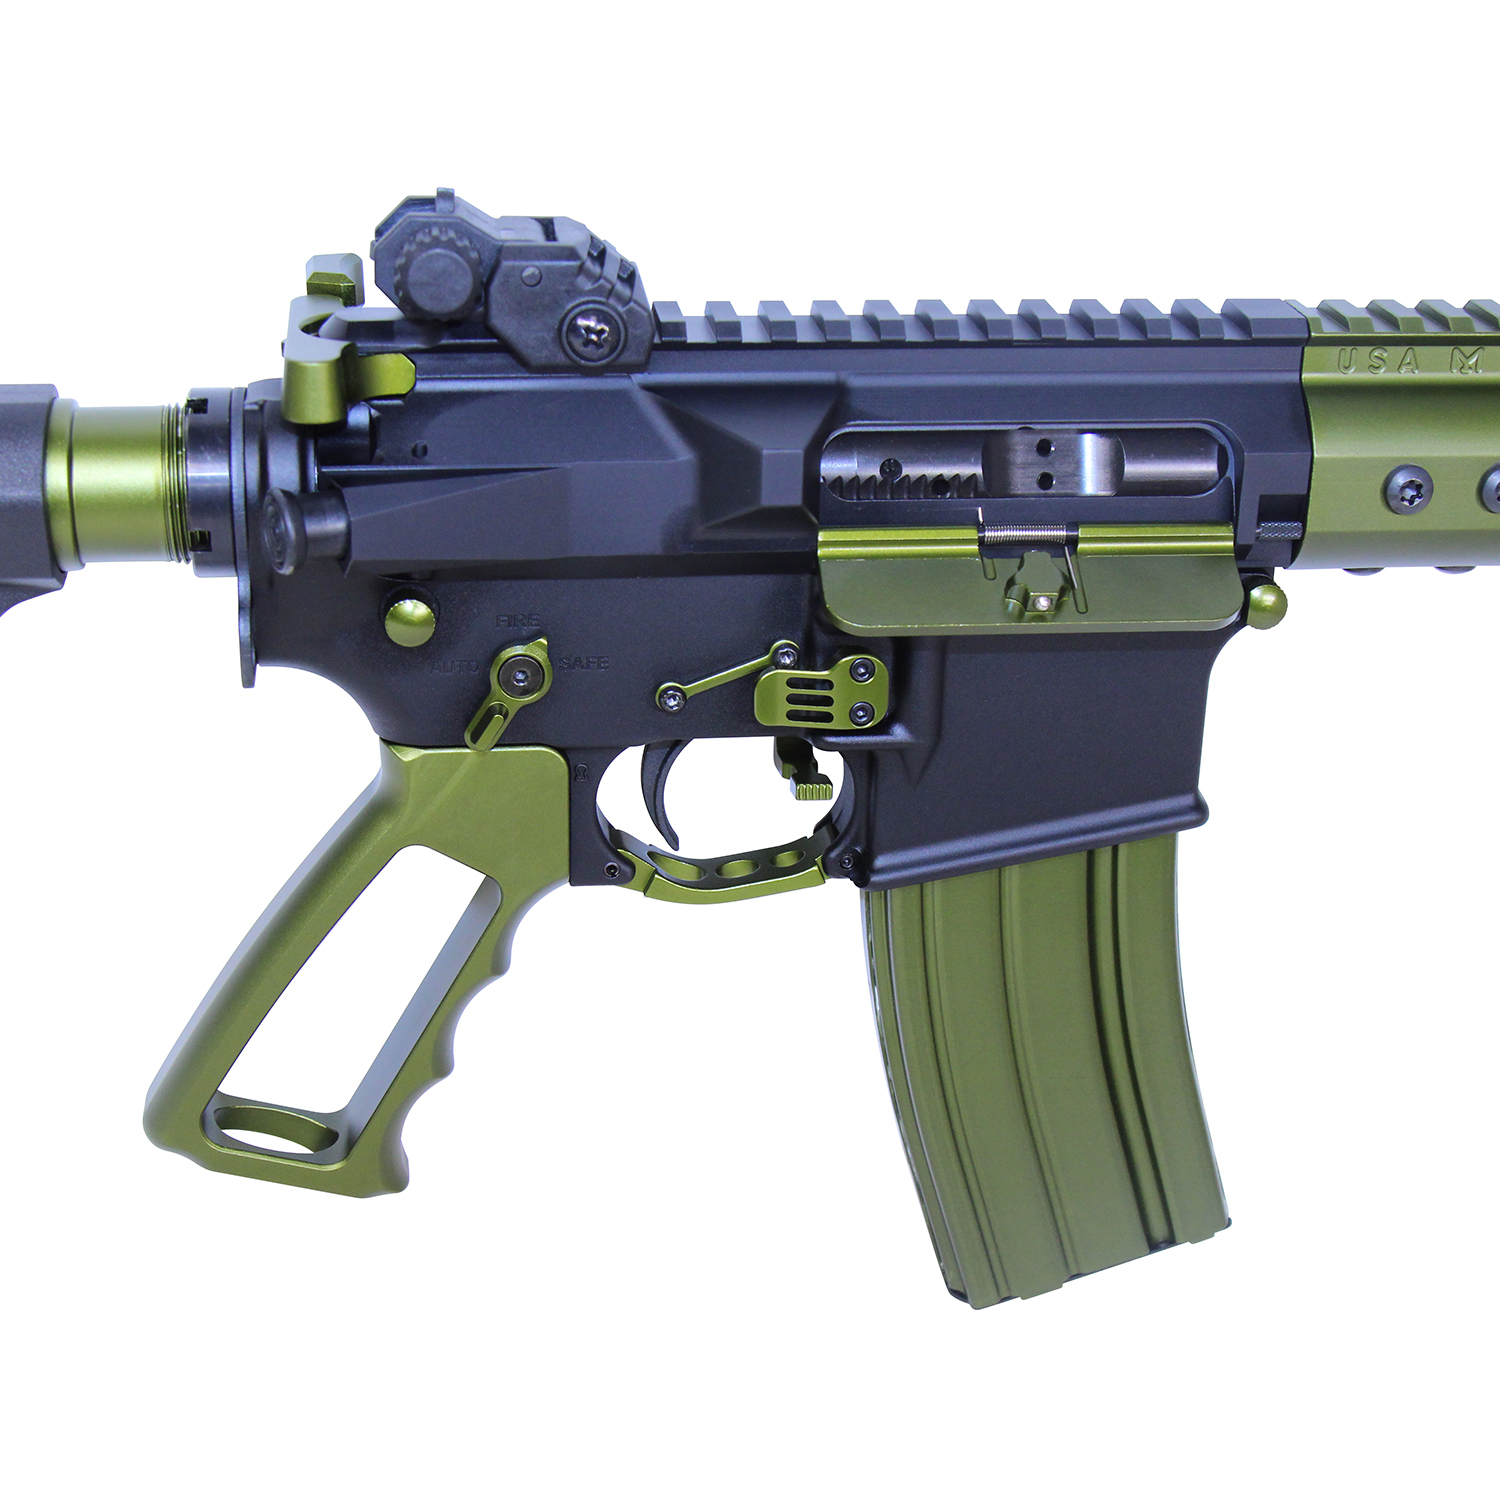 Guntec AR-15 Accent Kit Green) - Tactical